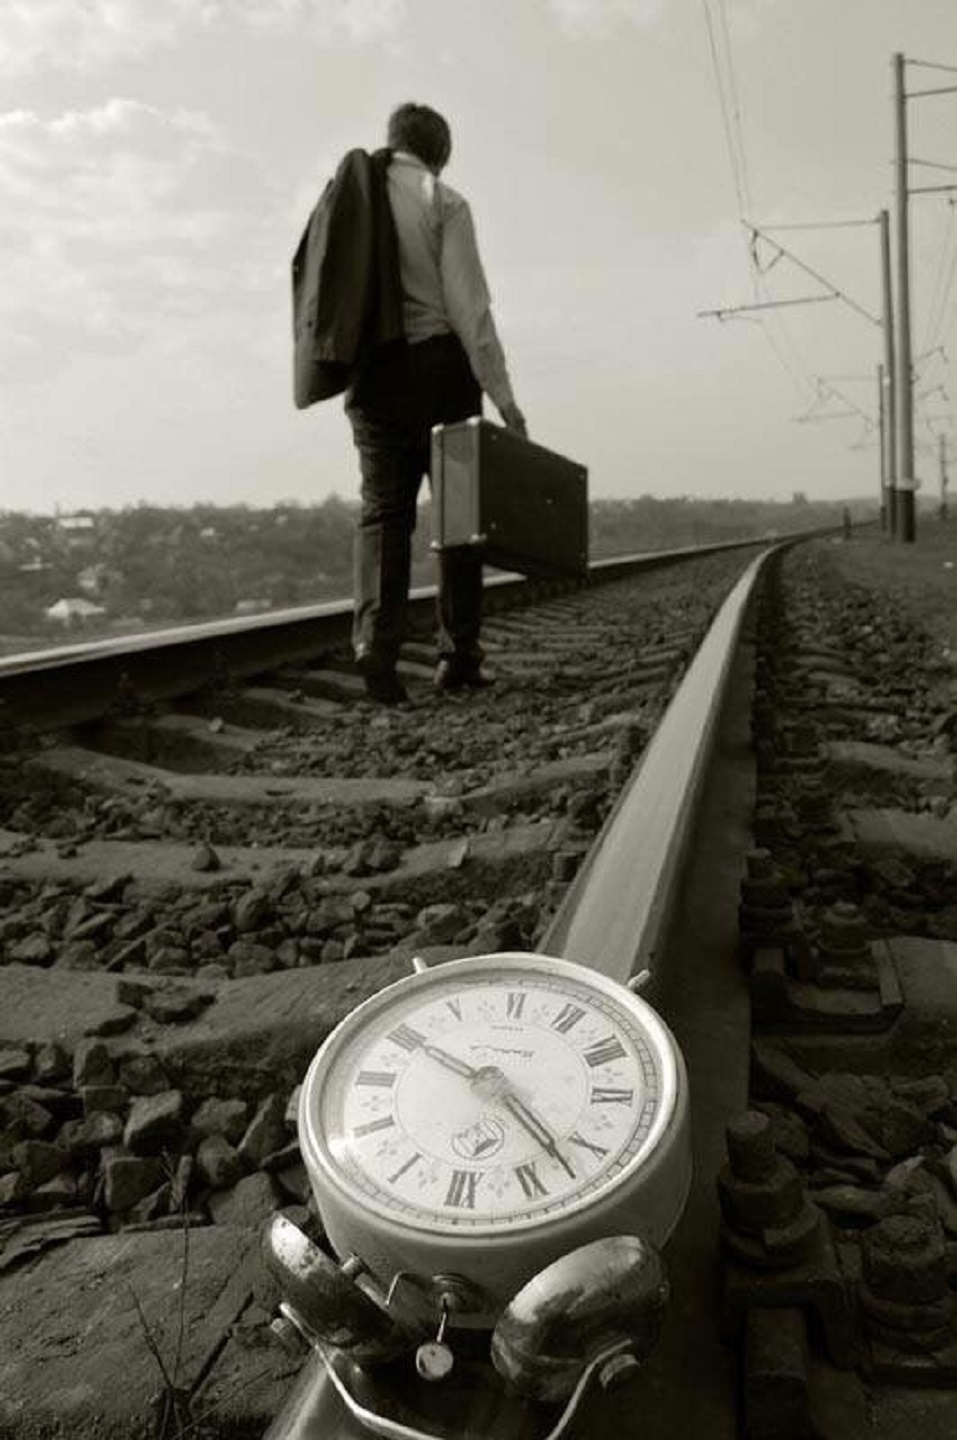 Опоздаешь никуда. Уходящий поезд. Поезд ушел. Опоздал на поезд. Жизнь уходит.